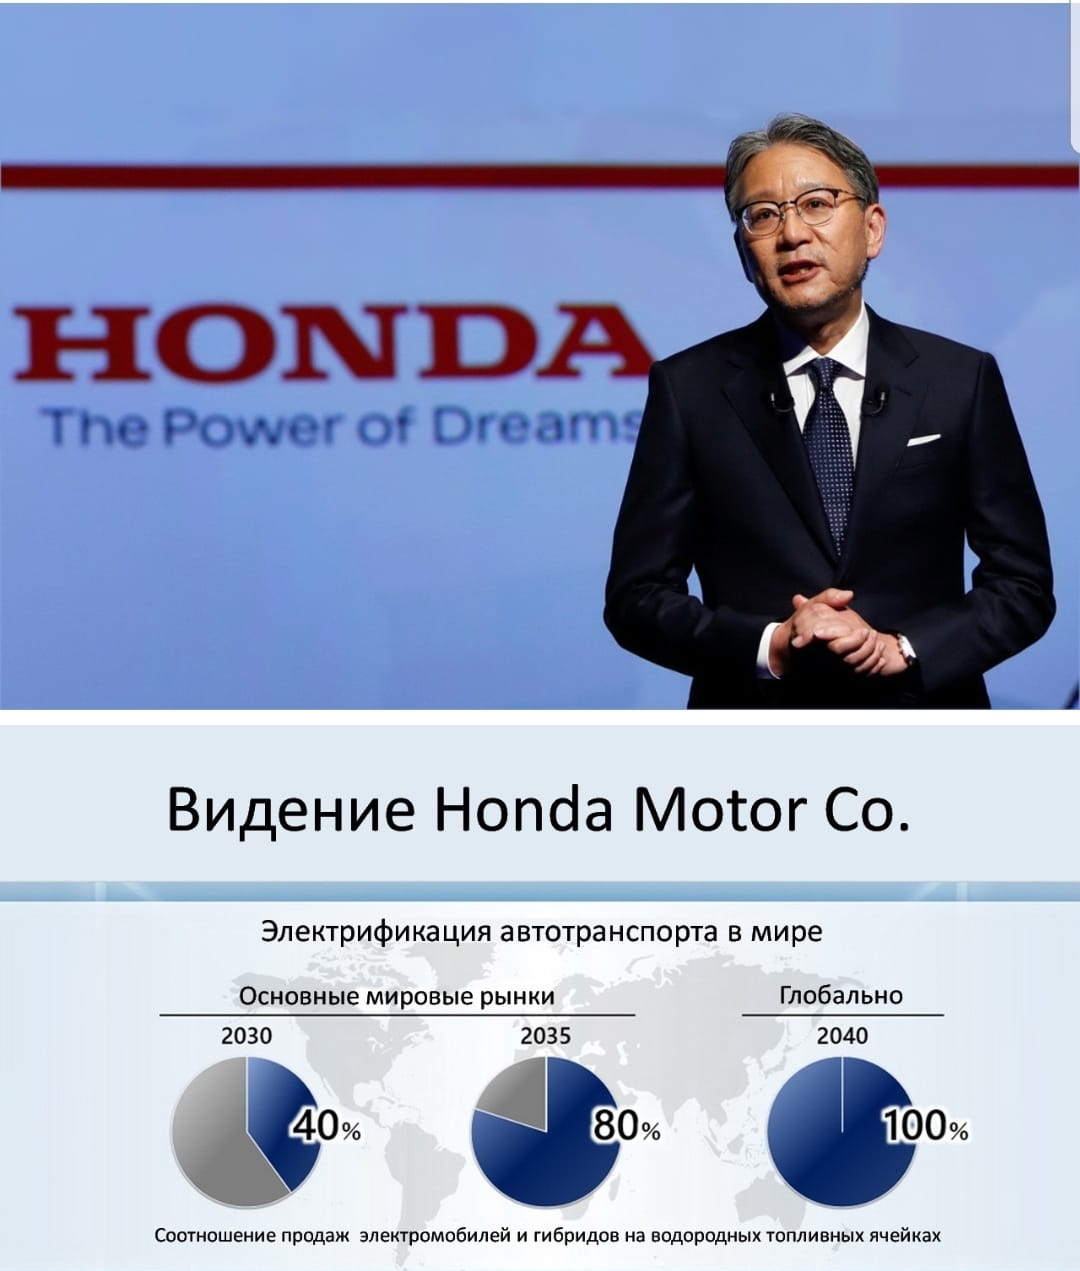 Видение Honda Motor Co: к 2040 году - 100% переход на электротягу